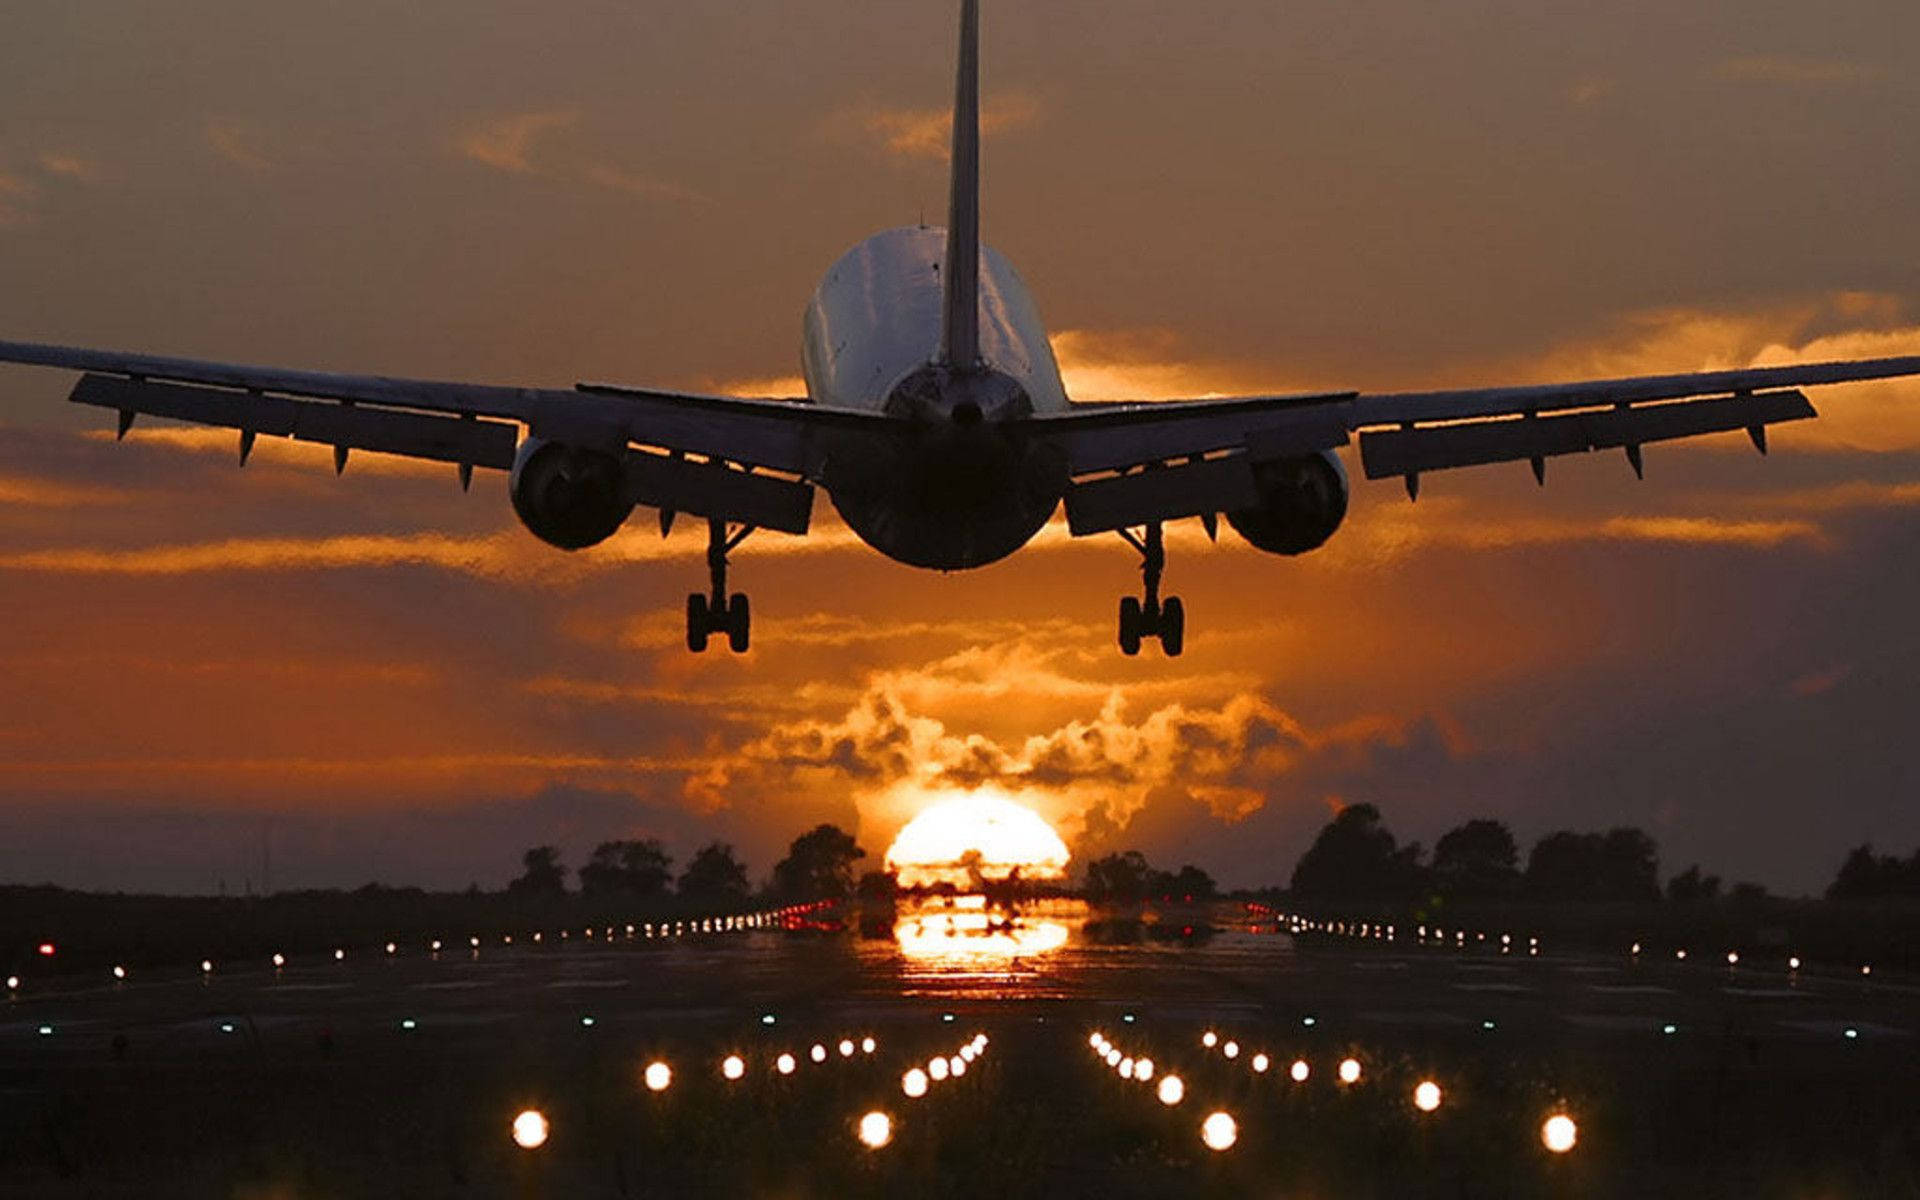 Download Sunset Landing Airplane Wallpaper